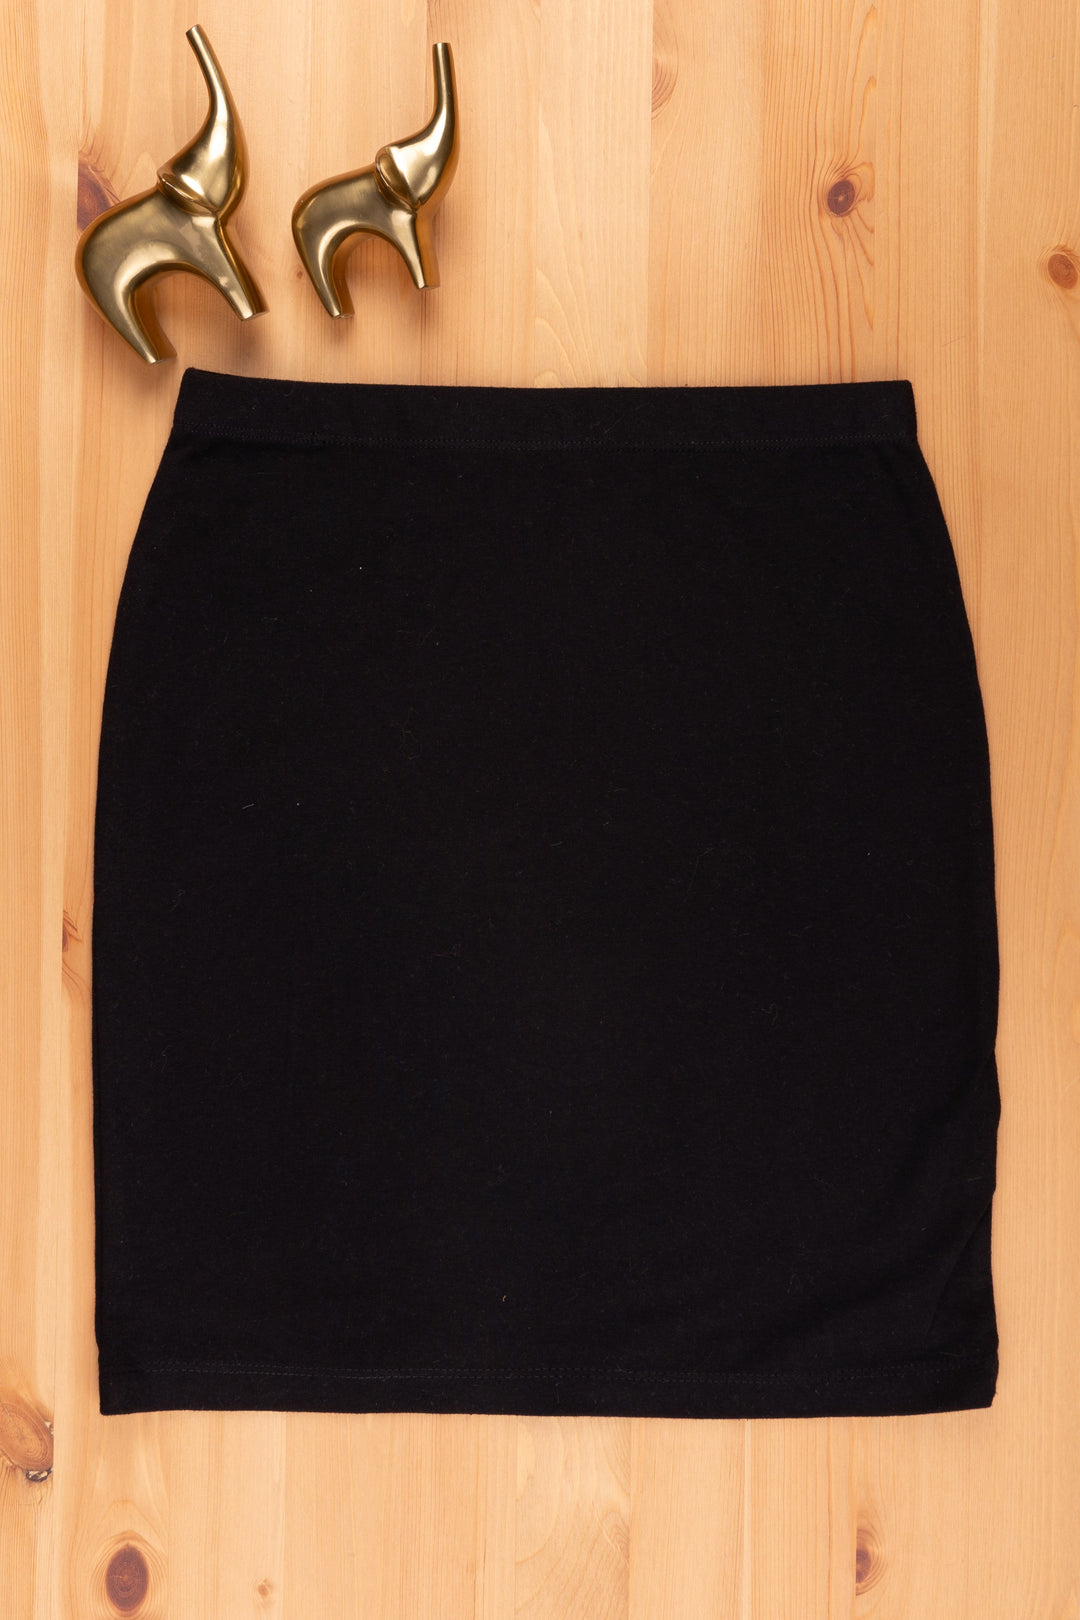 The Nesavu Girls Skirt Trendy Girls Skirts Fashion-forward Styles psr silks Nesavu 22 (4Y) / Black LSK002C